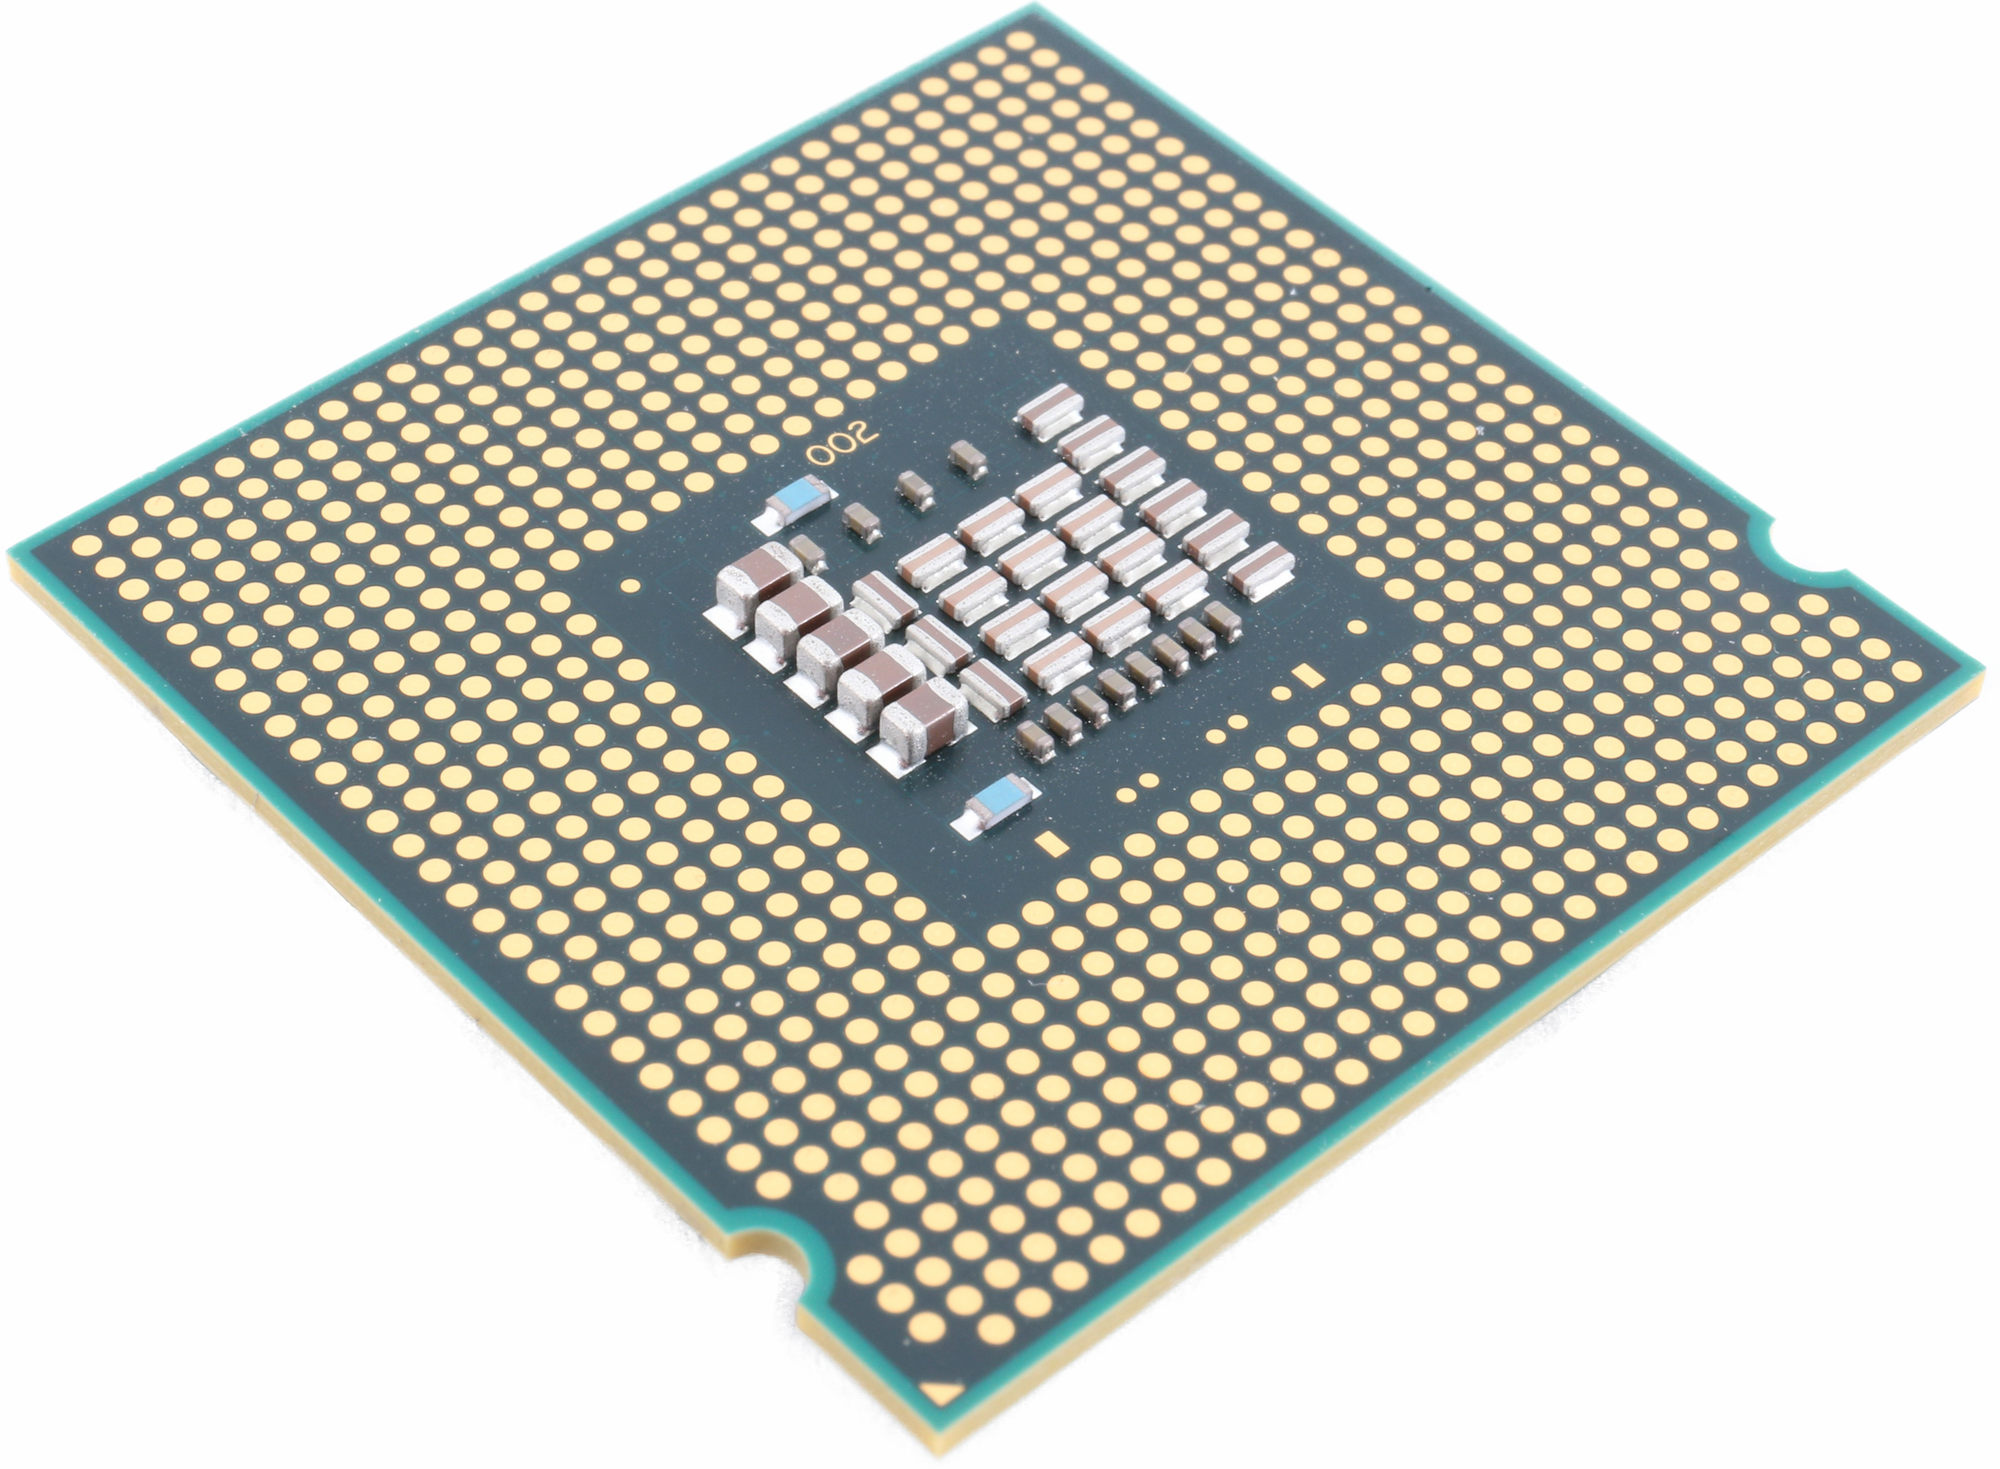 CPU's